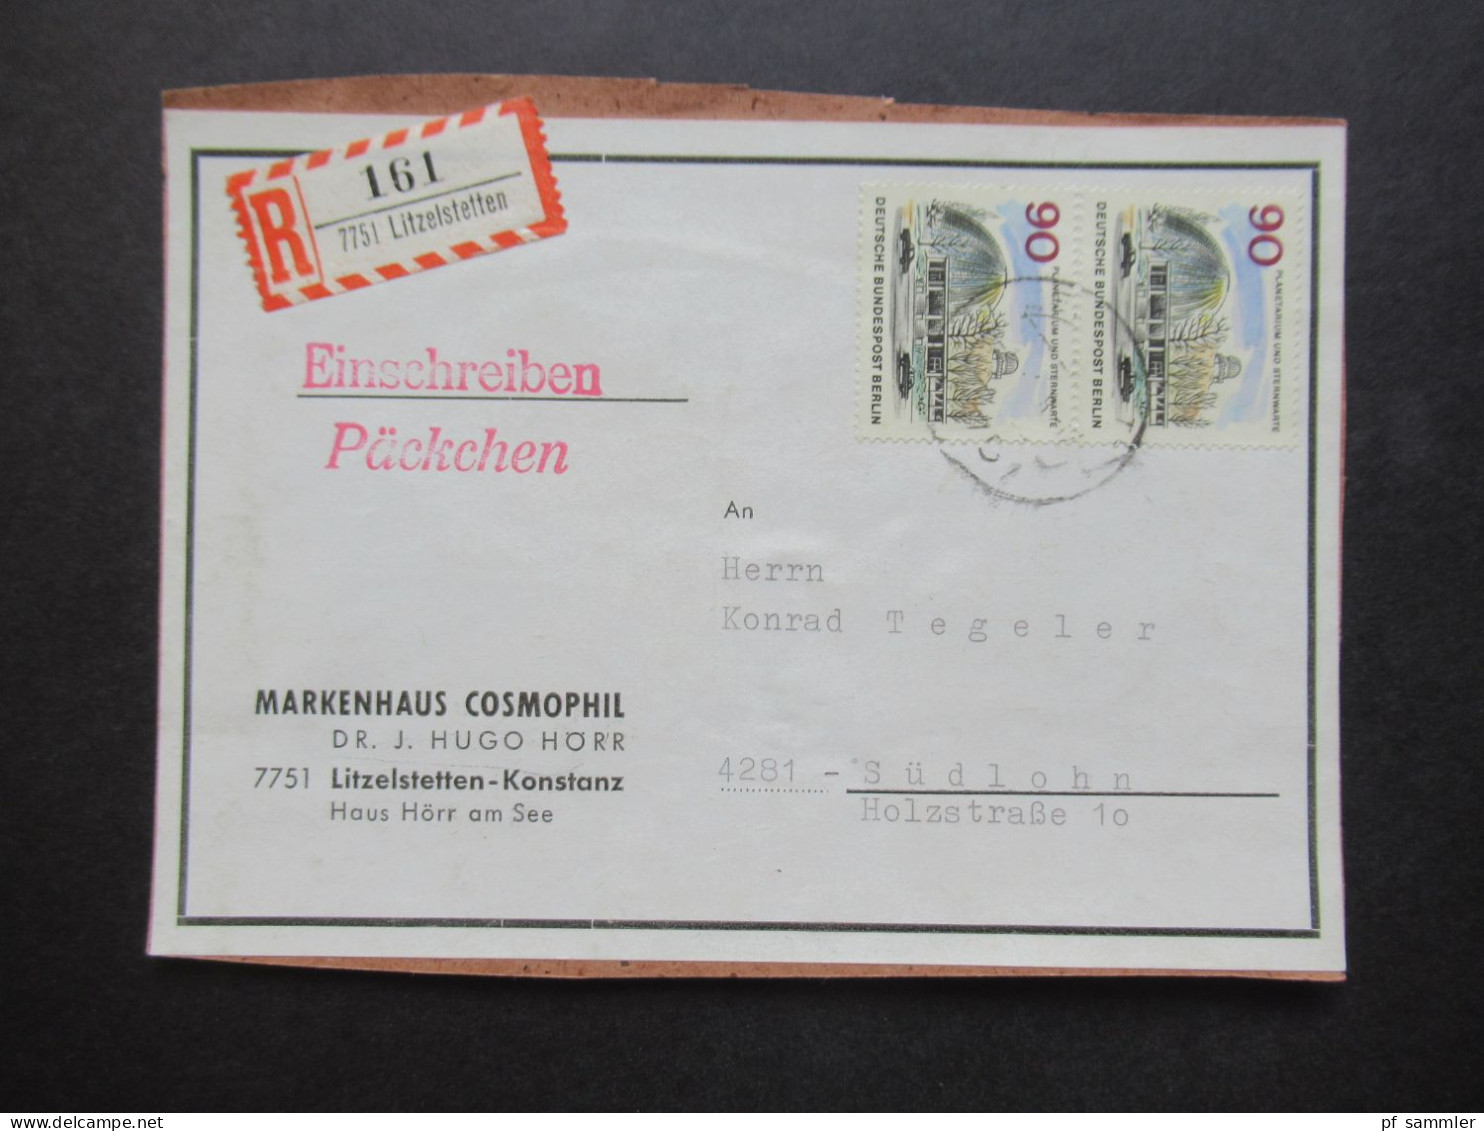 Berlin (West) 1965 Das Neue Berlin Nr.263 (2) MeF Auf Packchenadresse Einschreiben Päckchen 7751 Litzelstetten - Briefe U. Dokumente